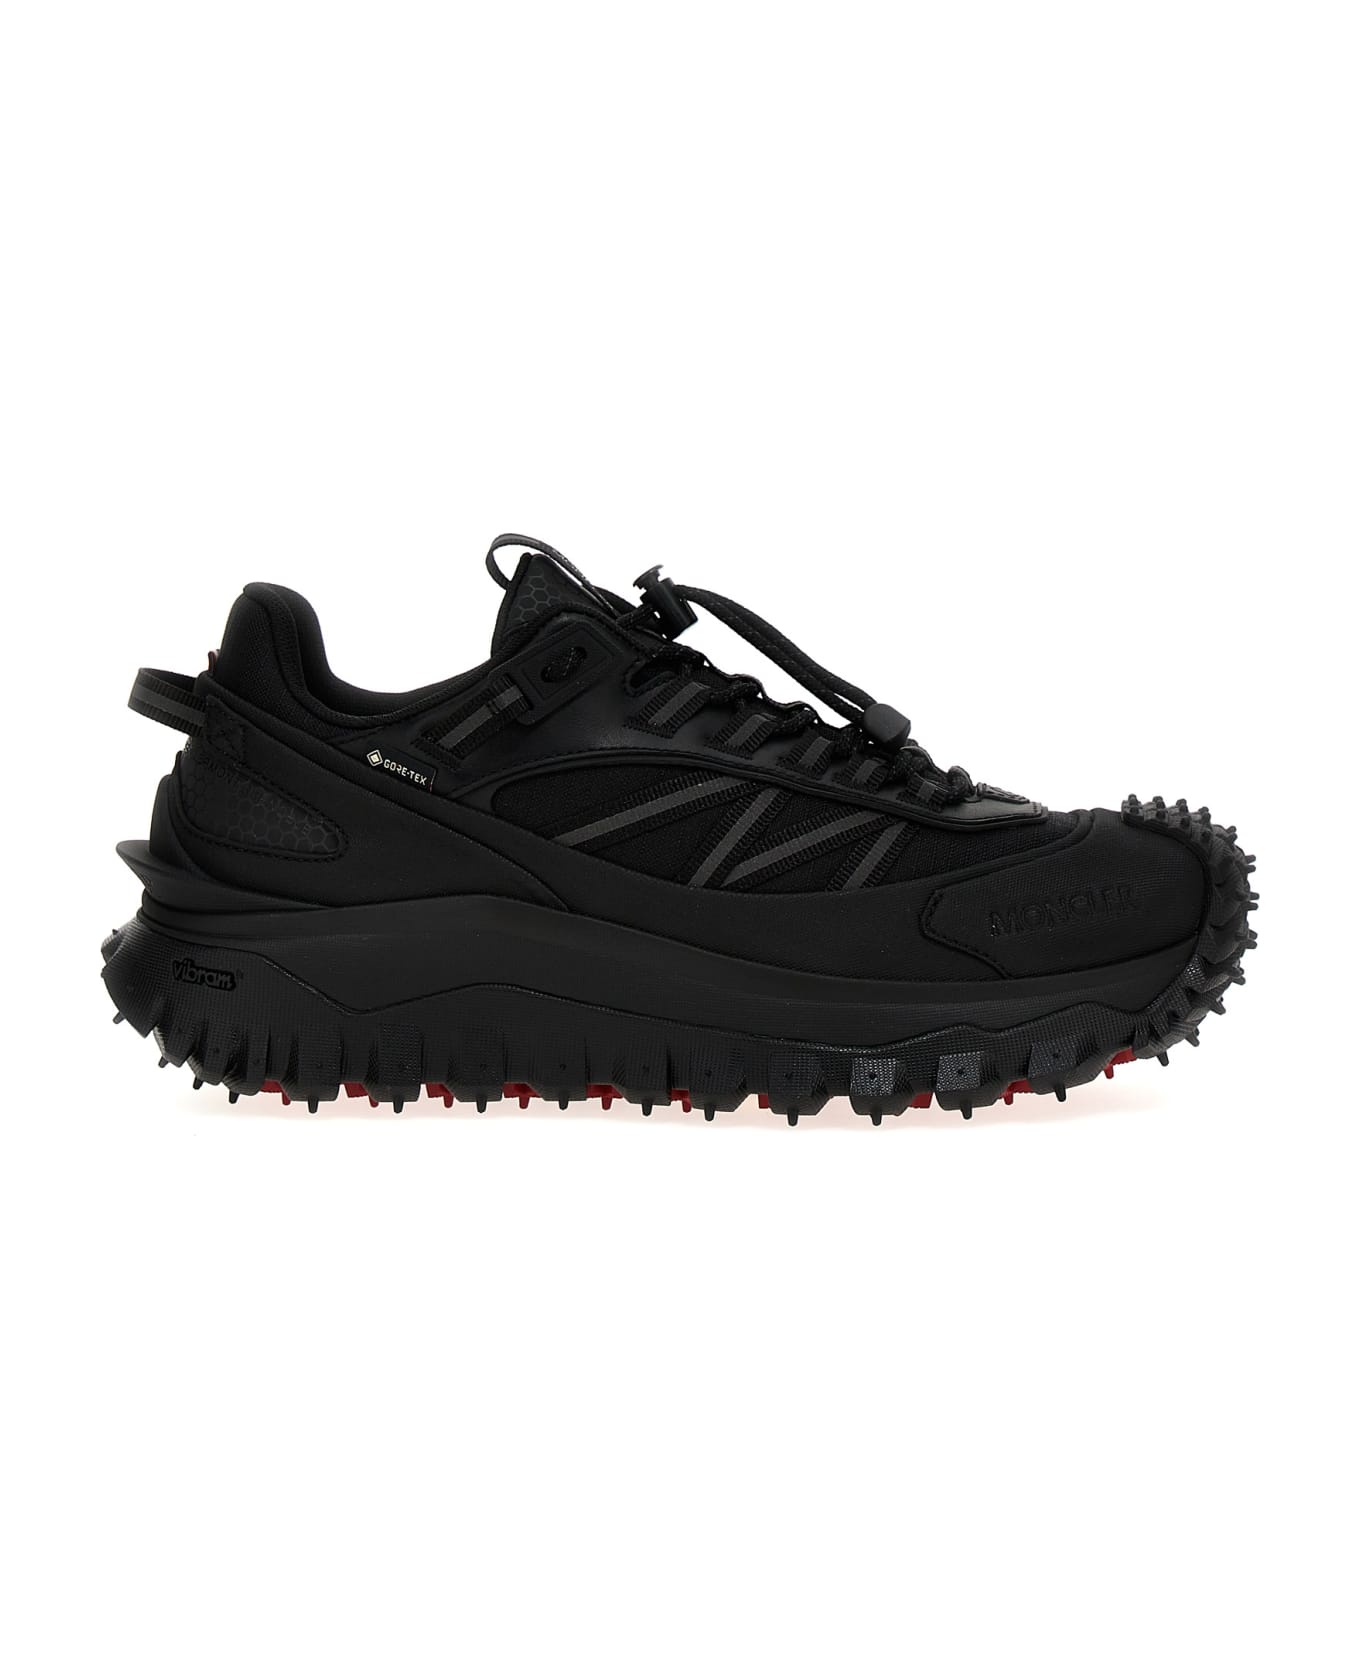 Moncler 'trailgrip Gtx' Sneakers - Black   スニーカー